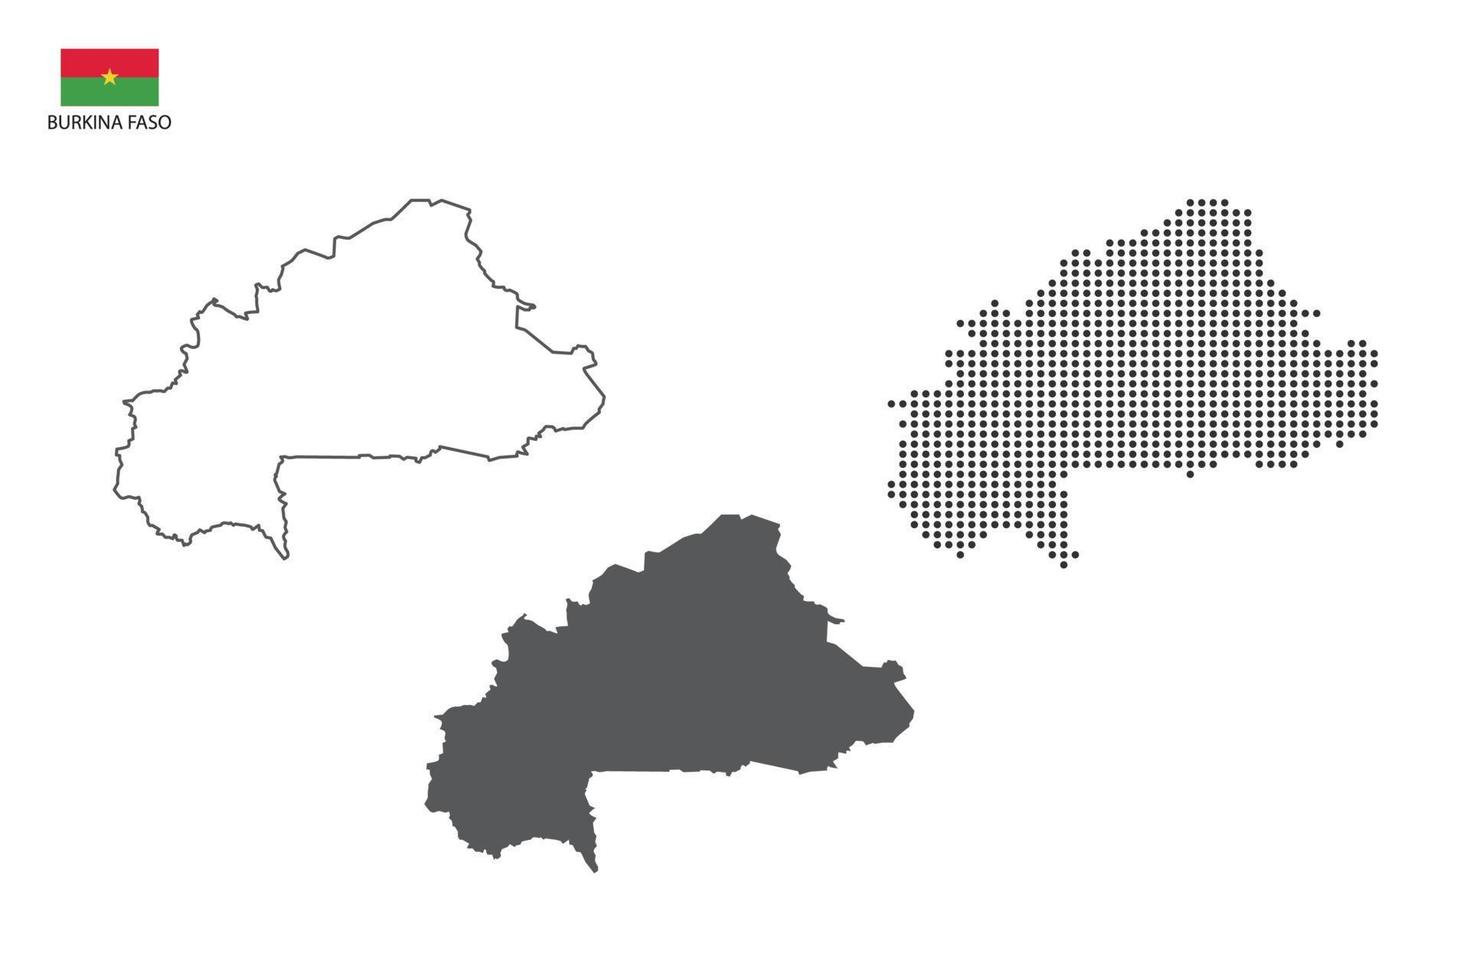 3 versões do vetor da cidade do mapa de Burkina Faso pelo estilo de simplicidade de contorno preto fino, estilo de ponto preto e estilo de sombra escura. tudo no fundo branco.